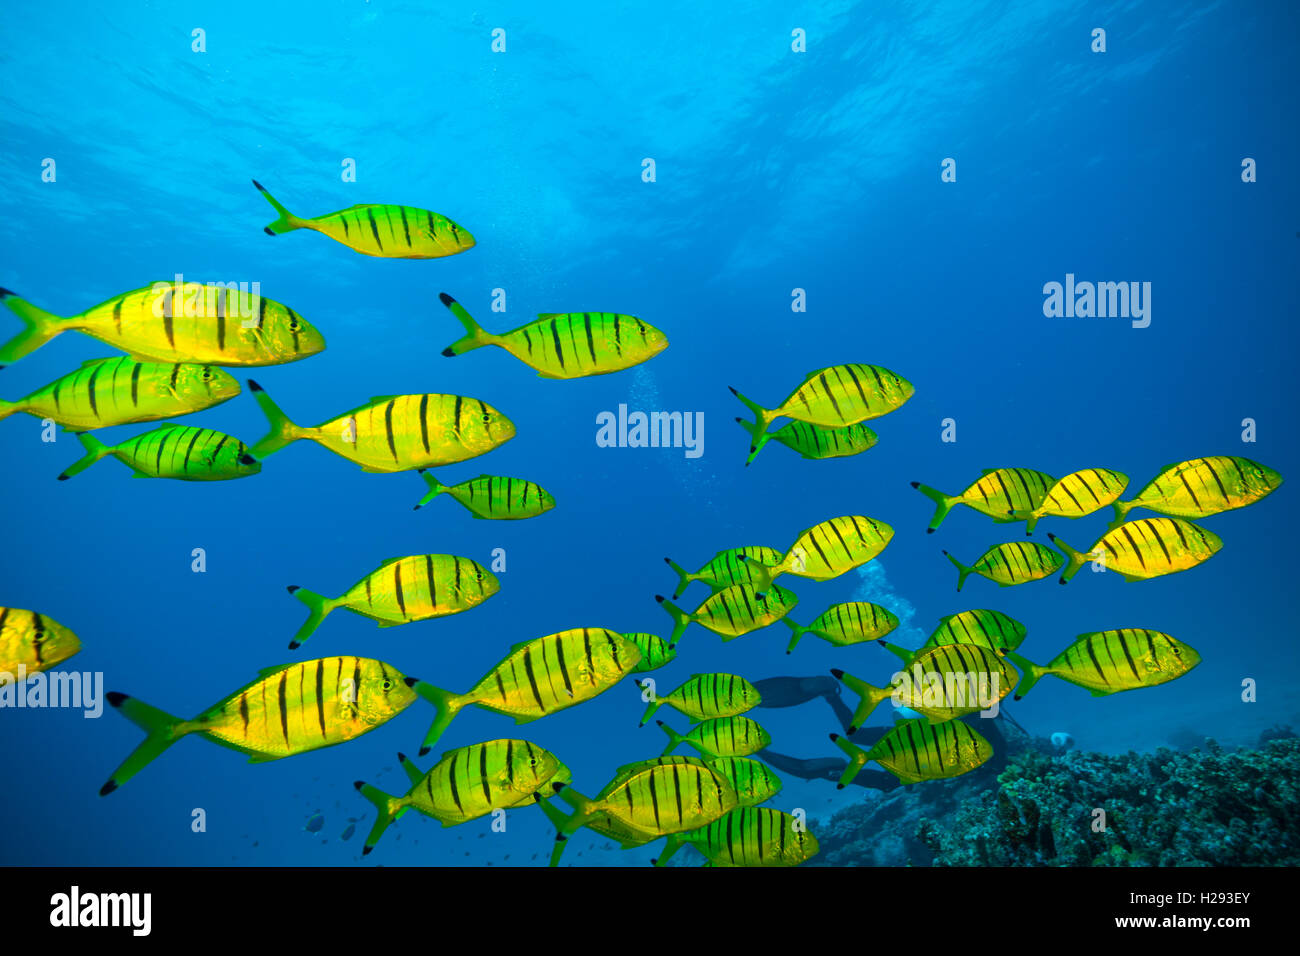 Troupeau de poissons jaunes qui coule dans l'océan Indien Banque D'Images